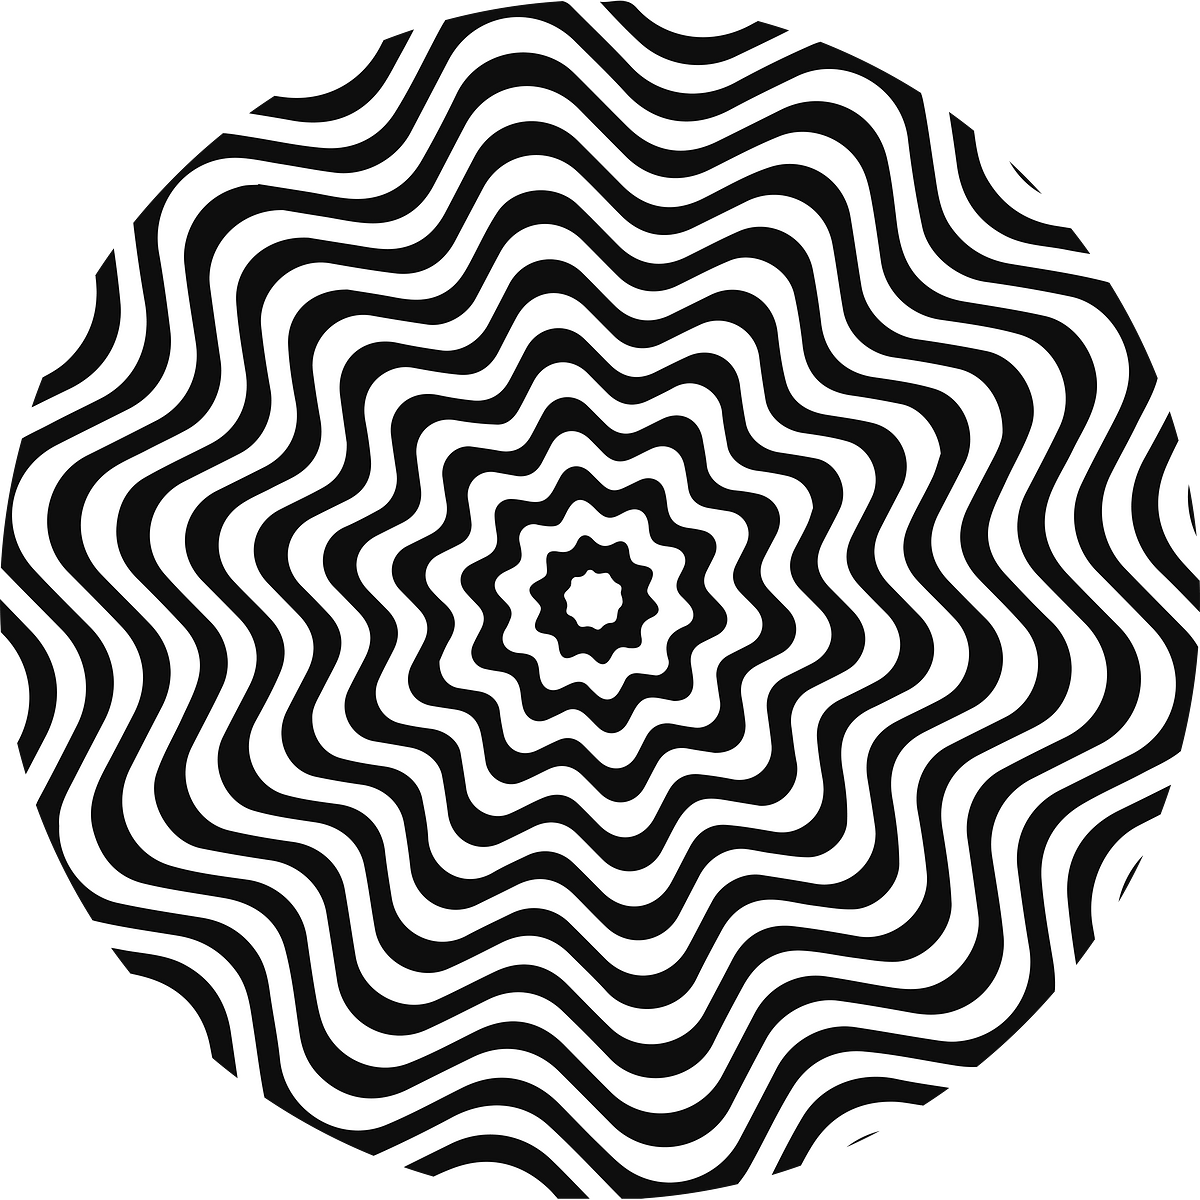 Титульное изображение для страницы события: расходящиеся от центра волнообразные черные круги на белом фоне